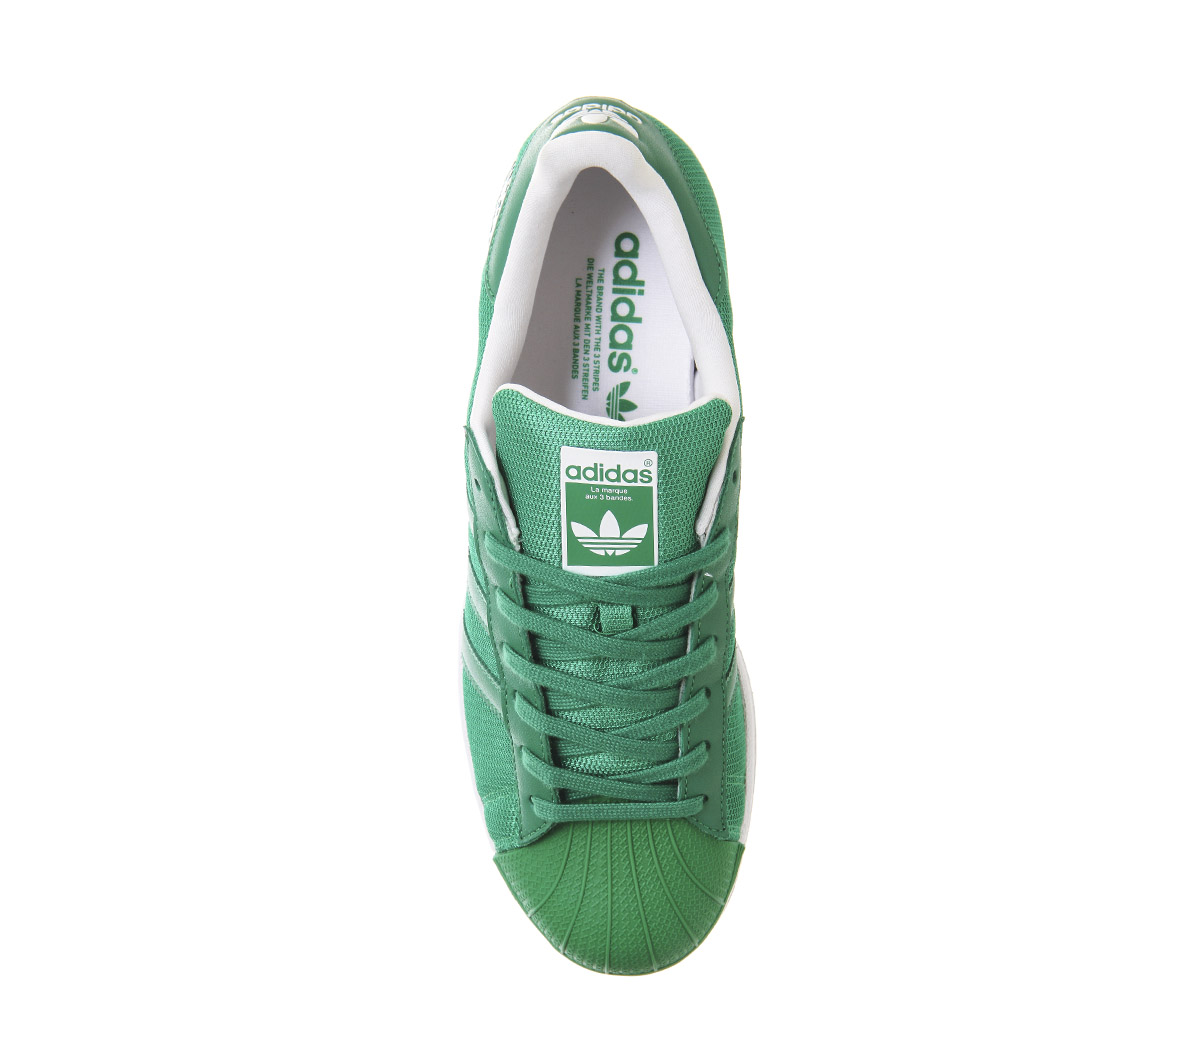 adidas Superstar 1 Green White Beckenbauer Pack - Unisex Sports